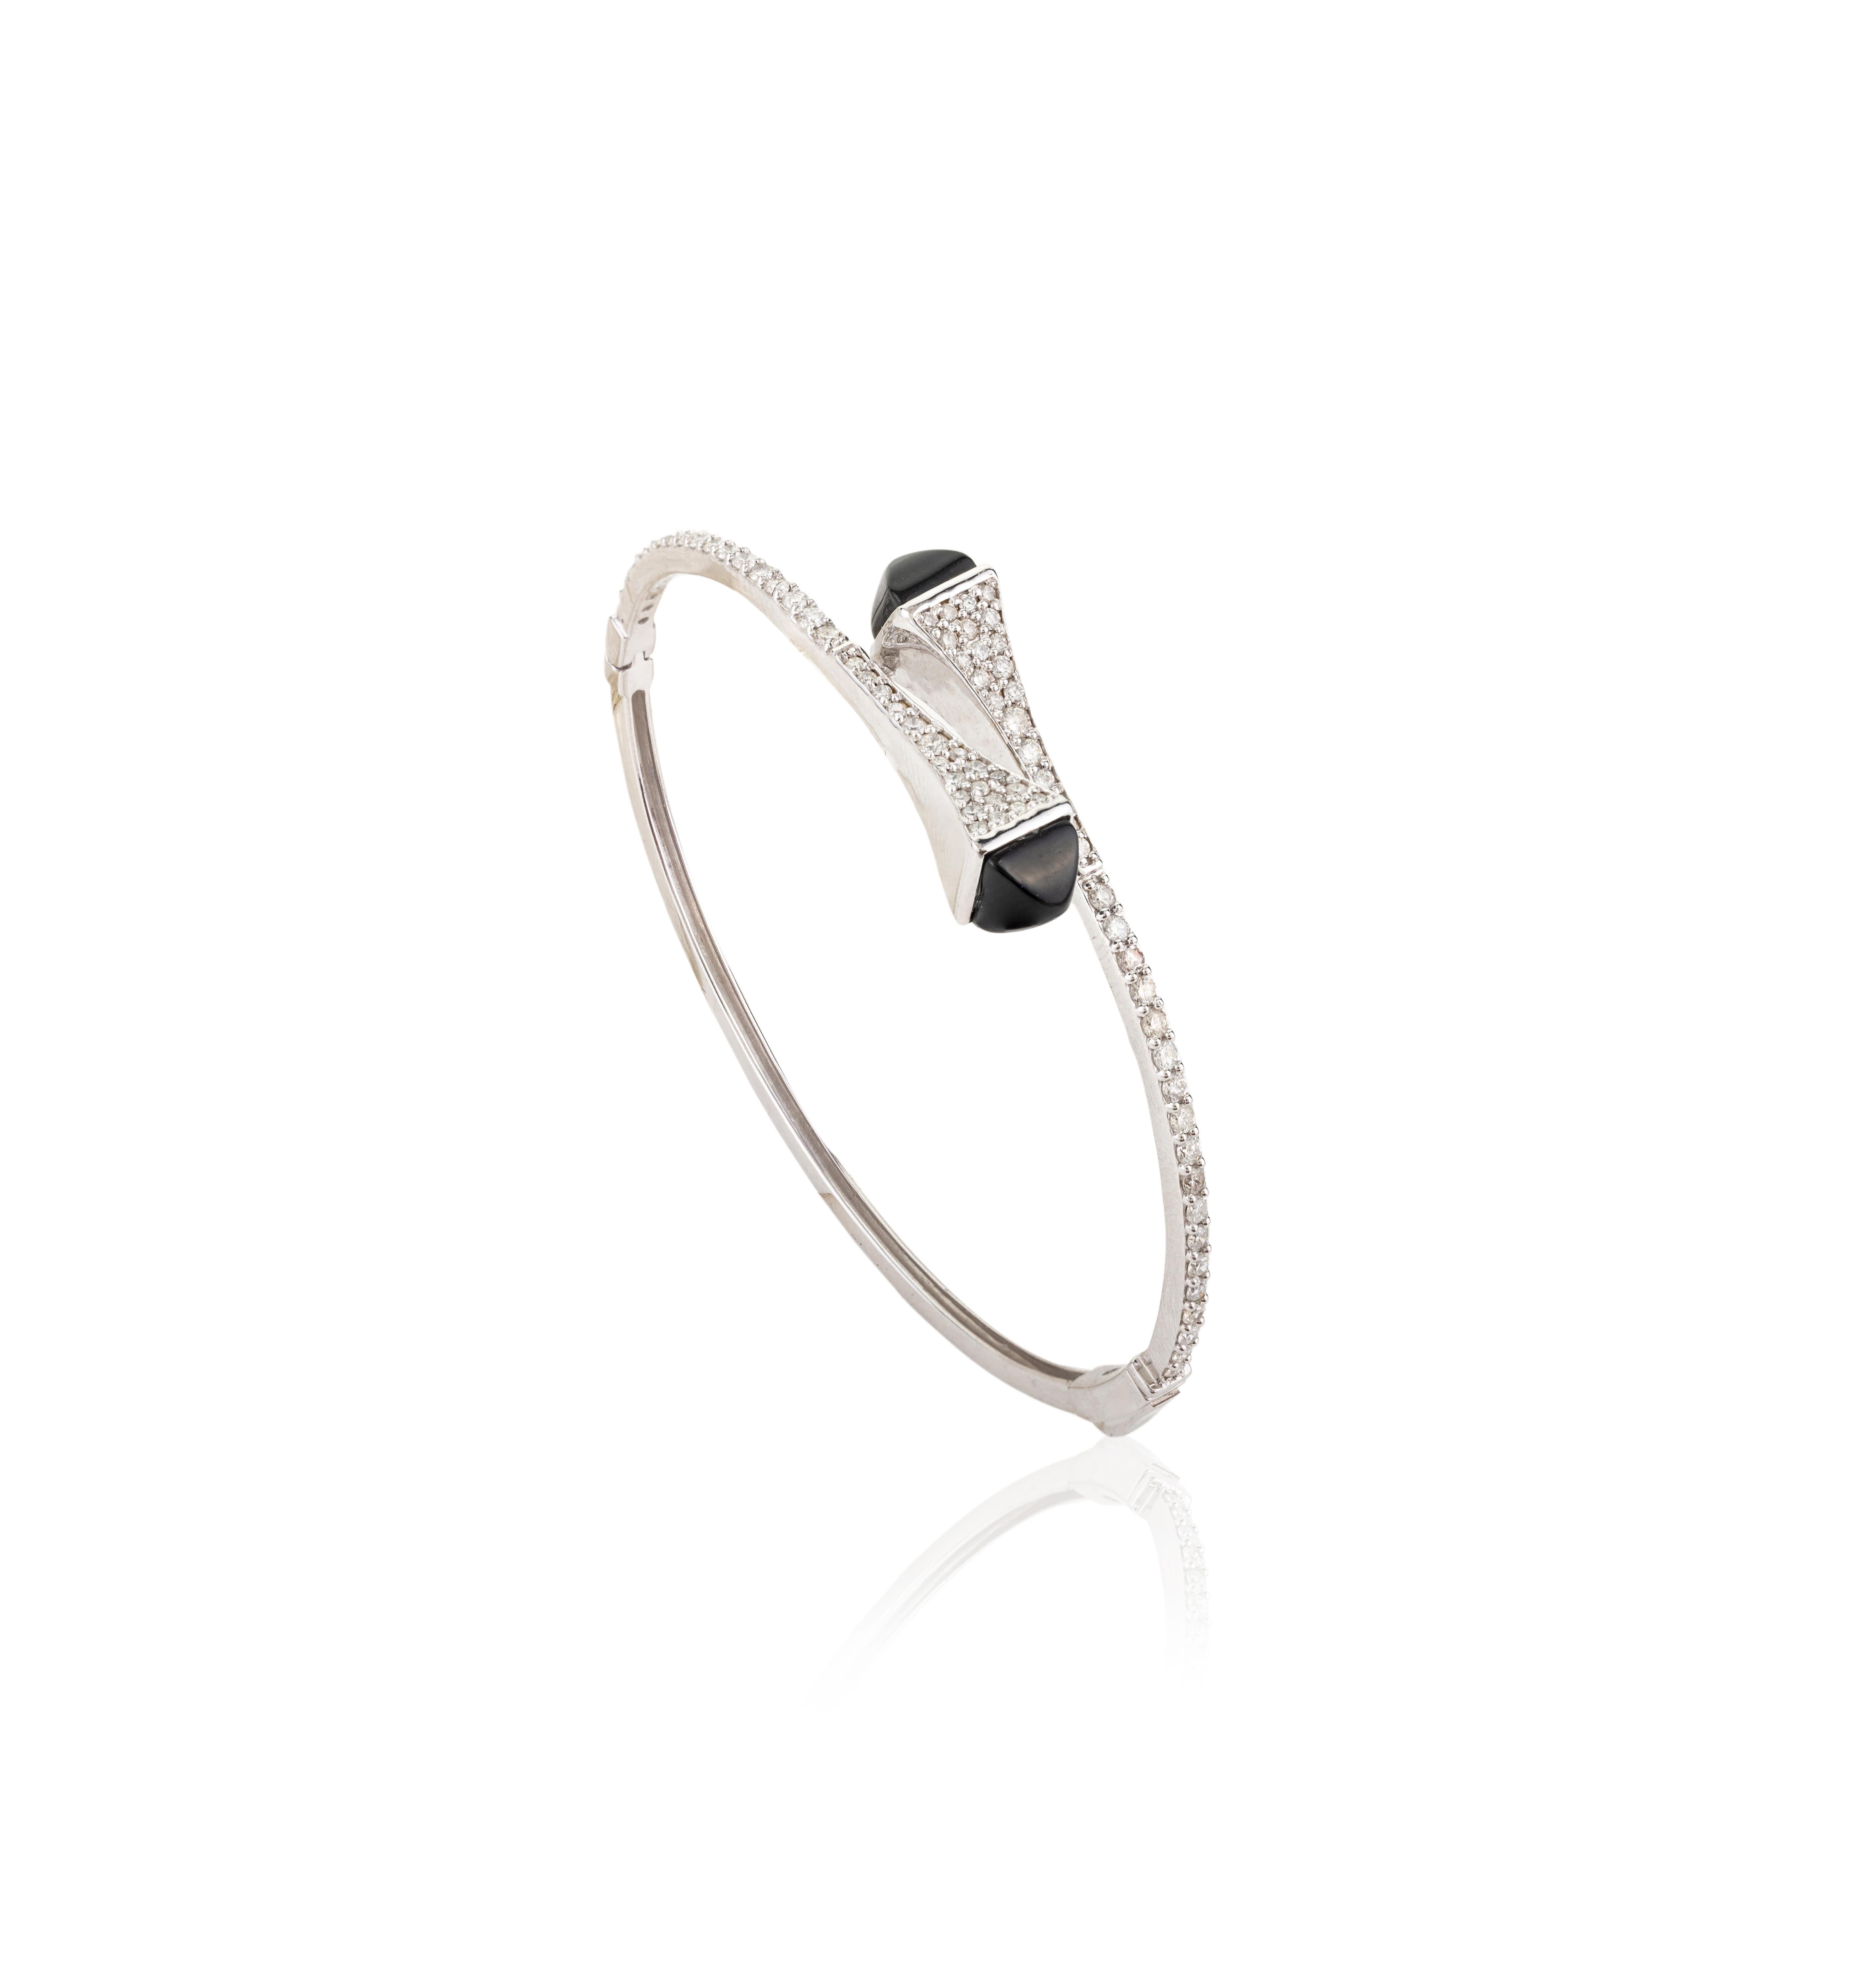 18k White Gold 1.19 CTW Certified Diamond Bangle Bracelet Gift for Her For Sale 1